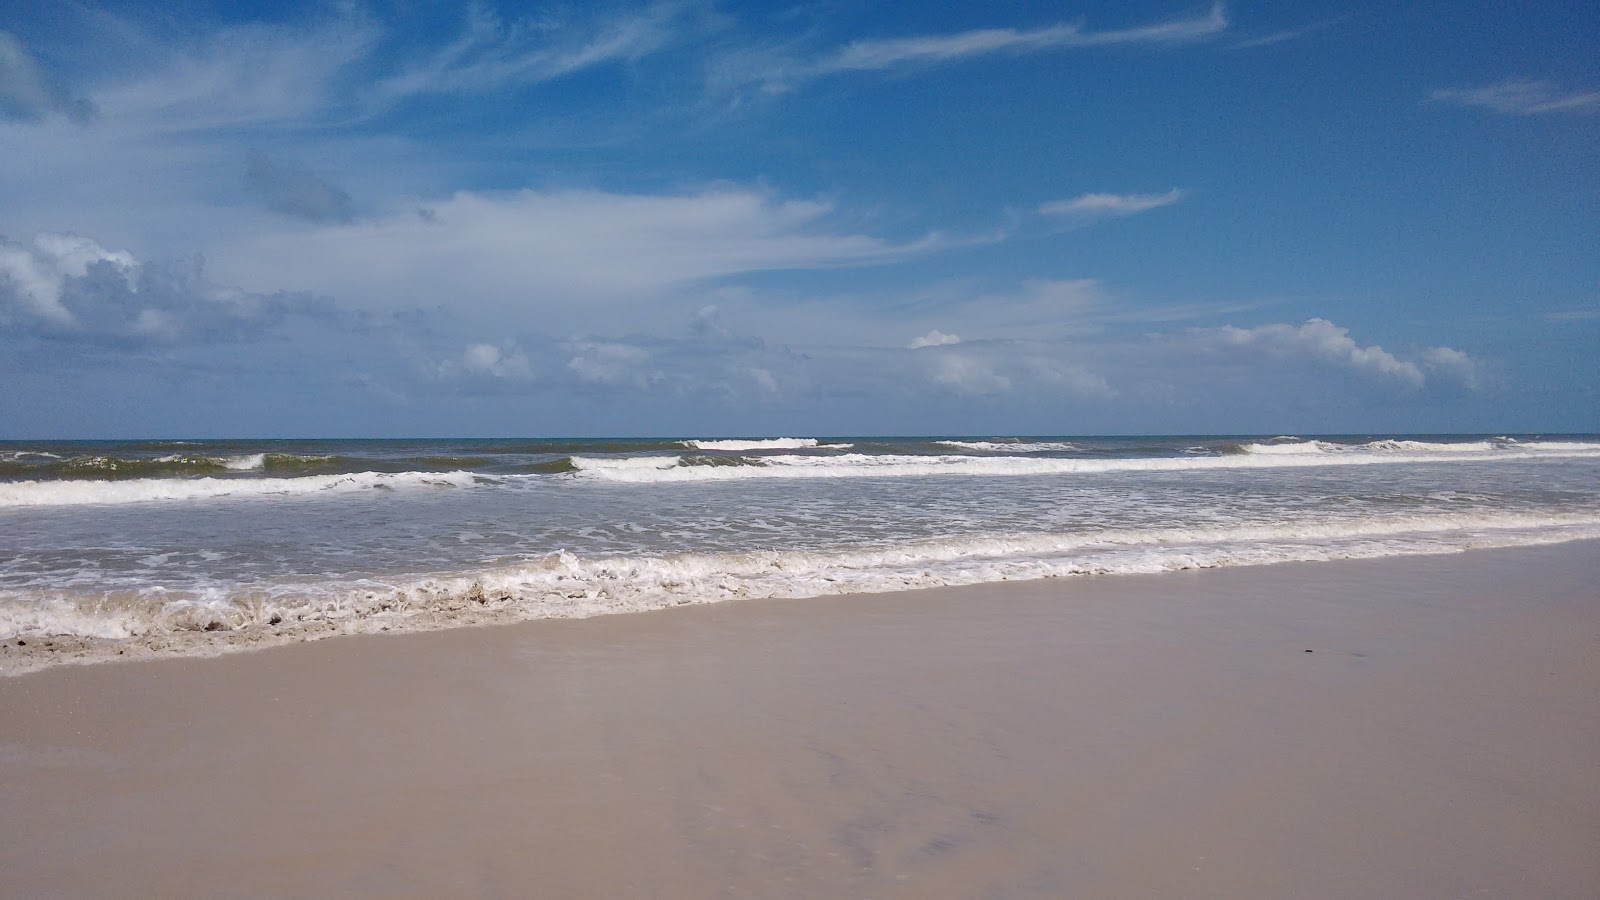 Praia de Acuipe'in fotoğrafı doğal alan içinde bulunmaktadır